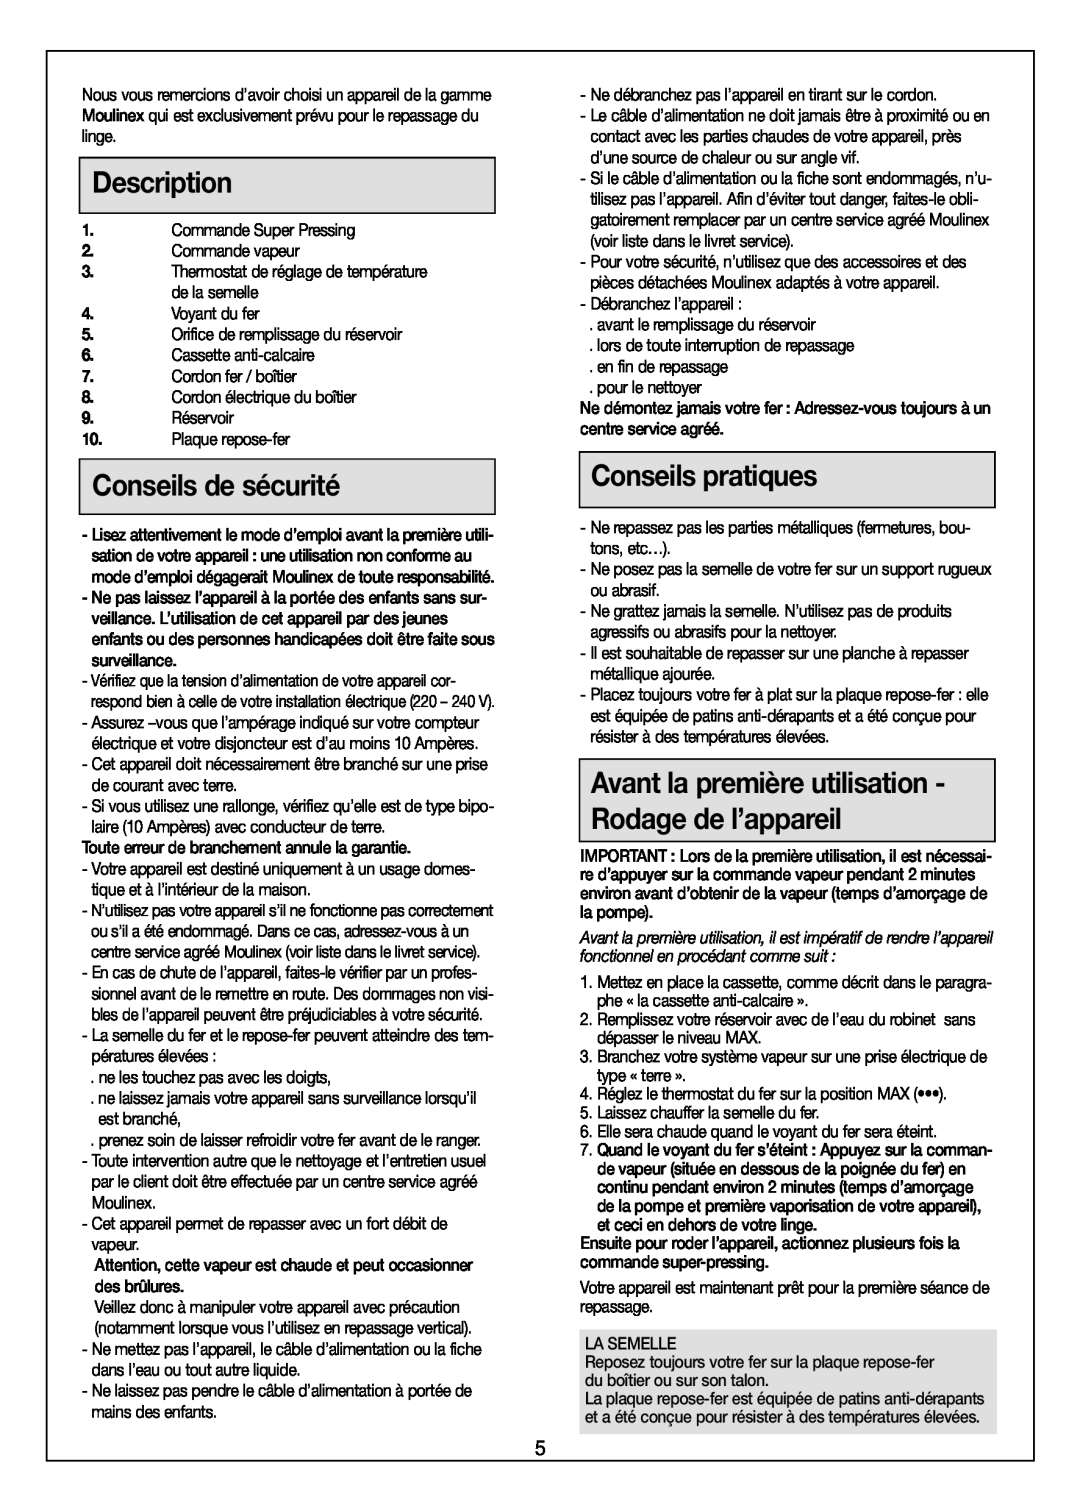 Moulinex Aquaplus IRON manual Description, Conseils de sécurité, Conseils pratiques 